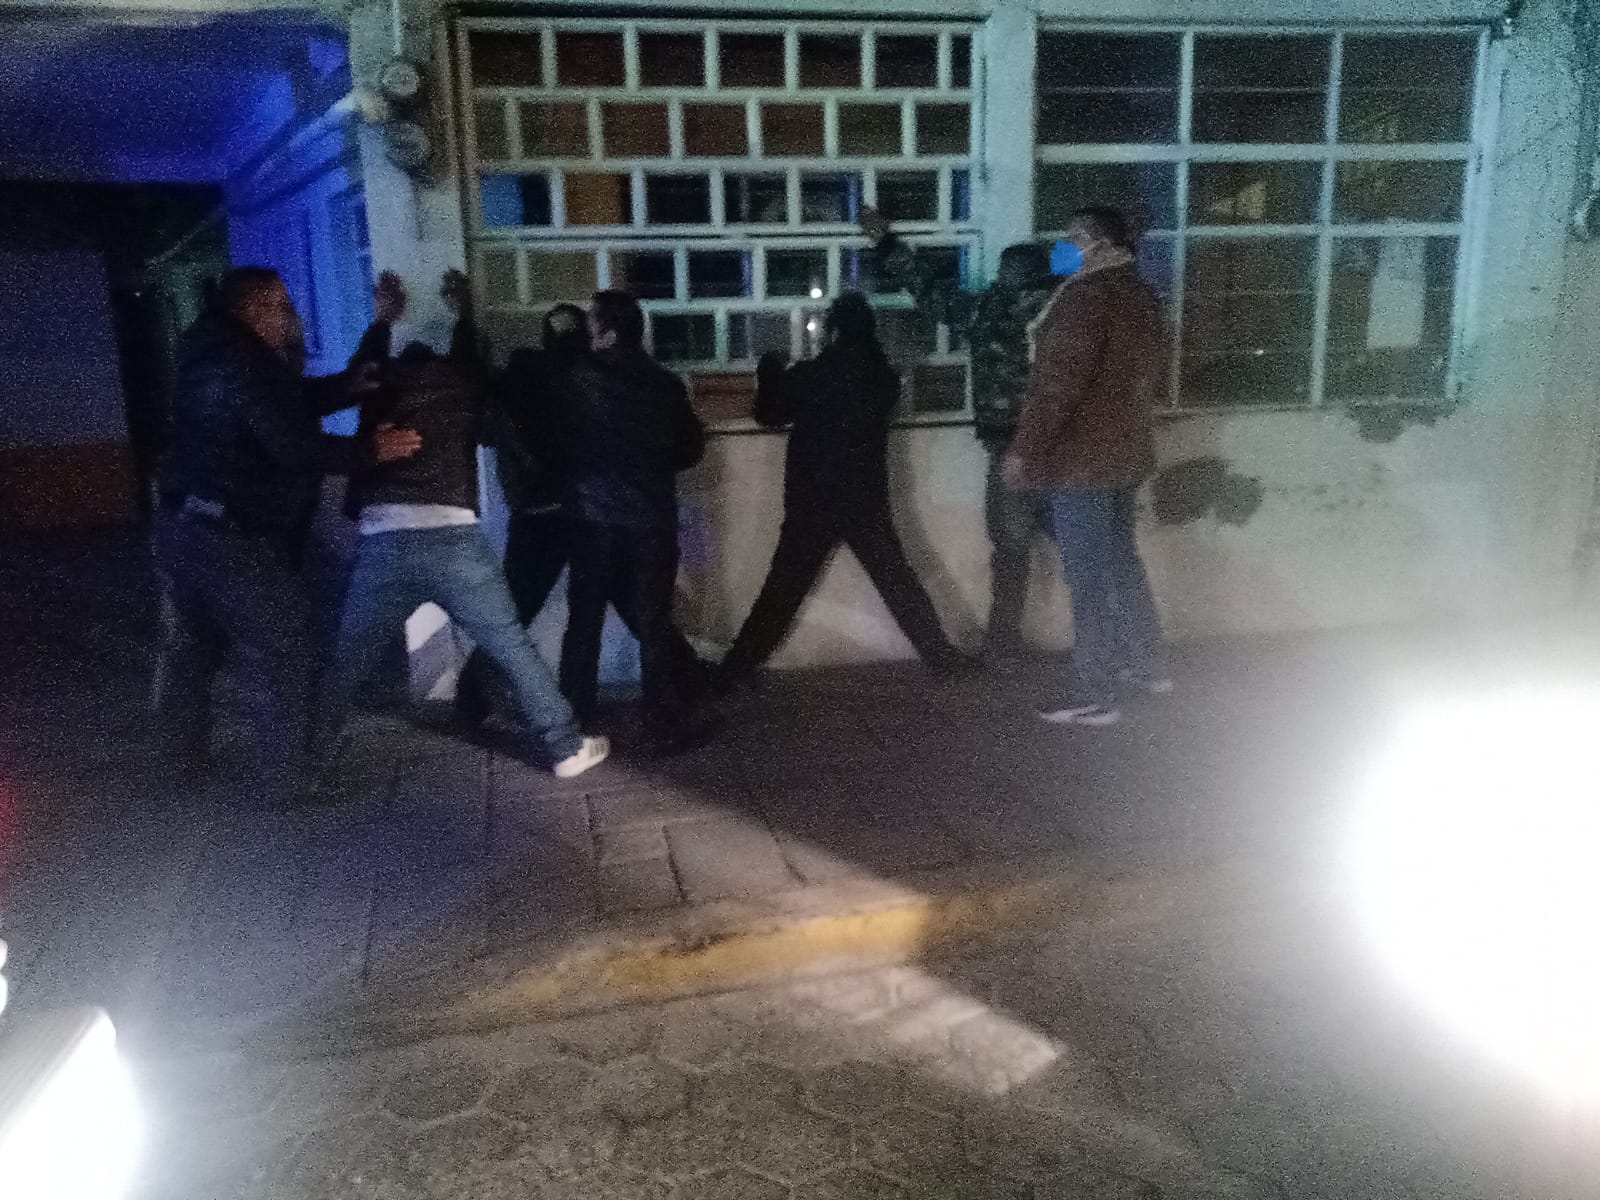   Capturan a peligrosa banda de asaltantes en Ocotlán